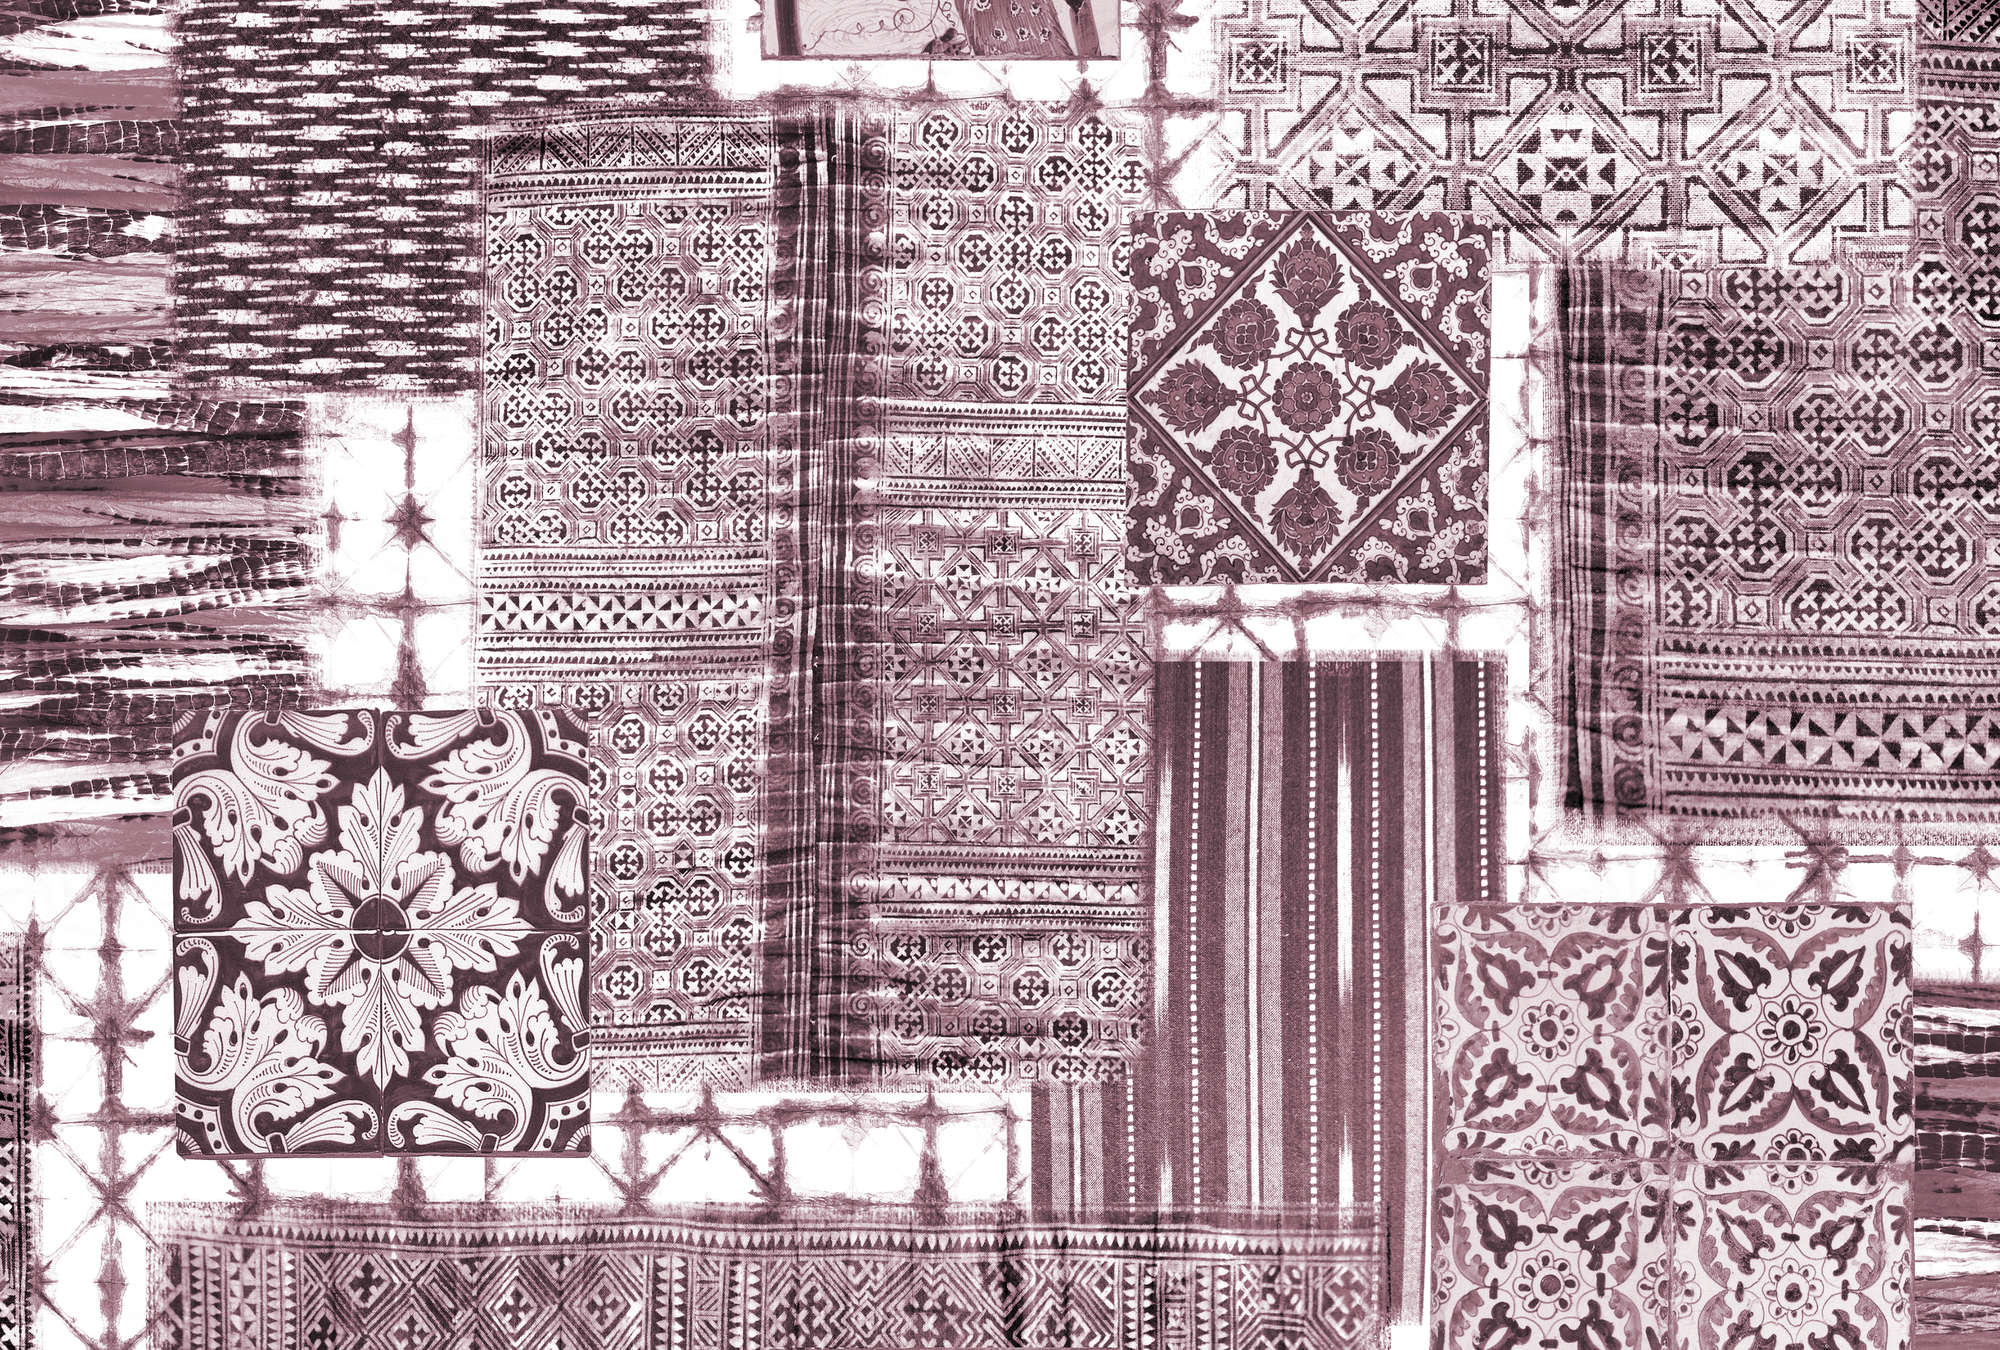             Tegelpatroon & Patchwork Design Behang - Paars, Wit
        